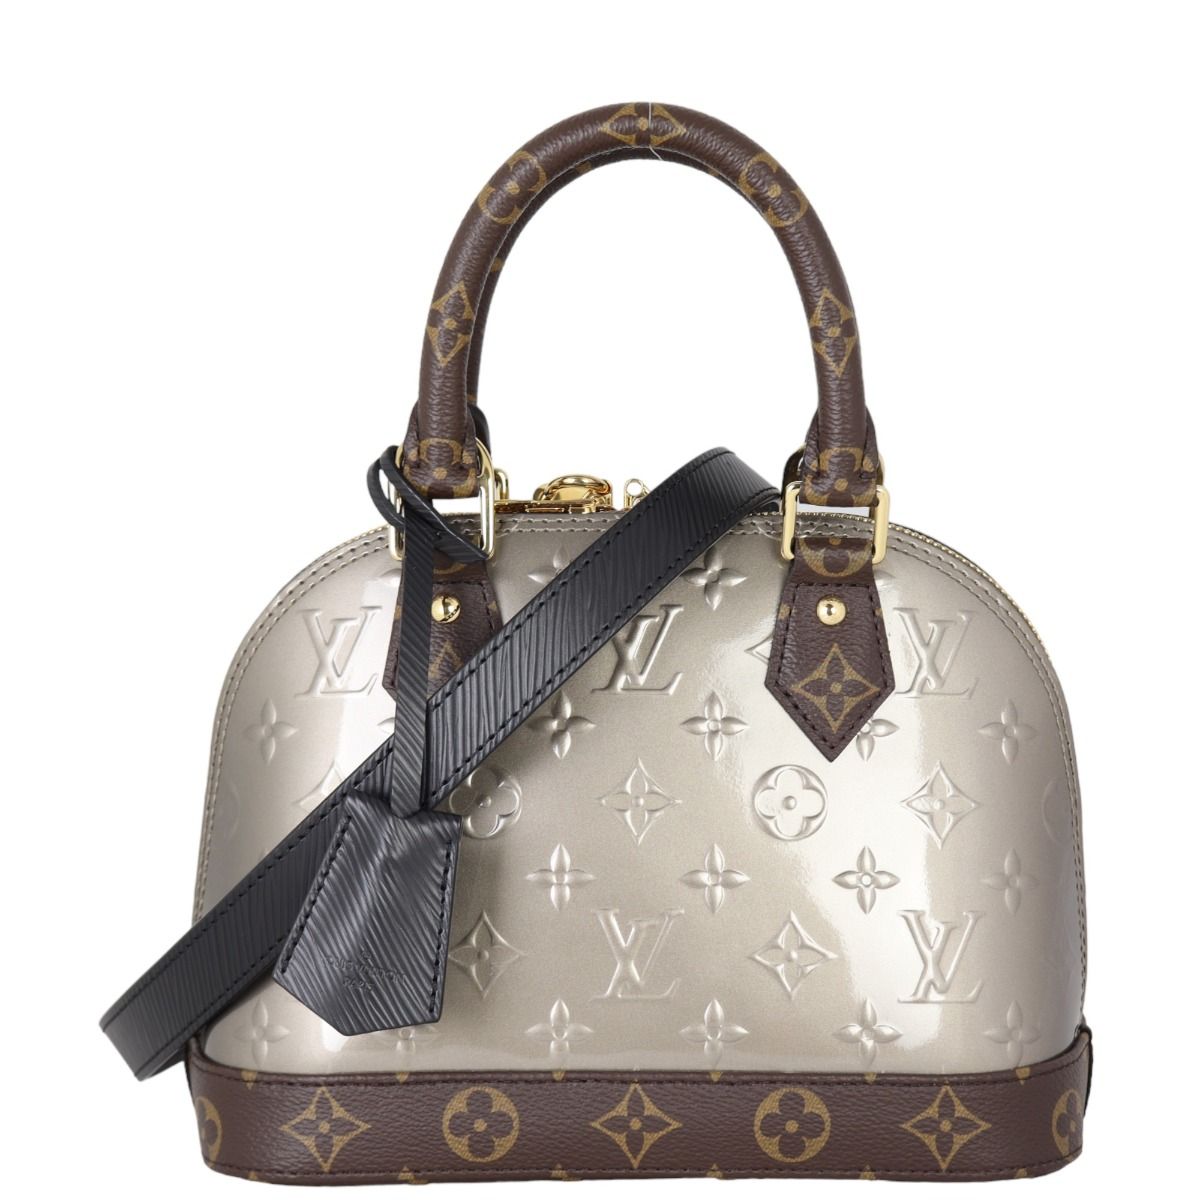 Louis Vuitton Alma Bb Handbag